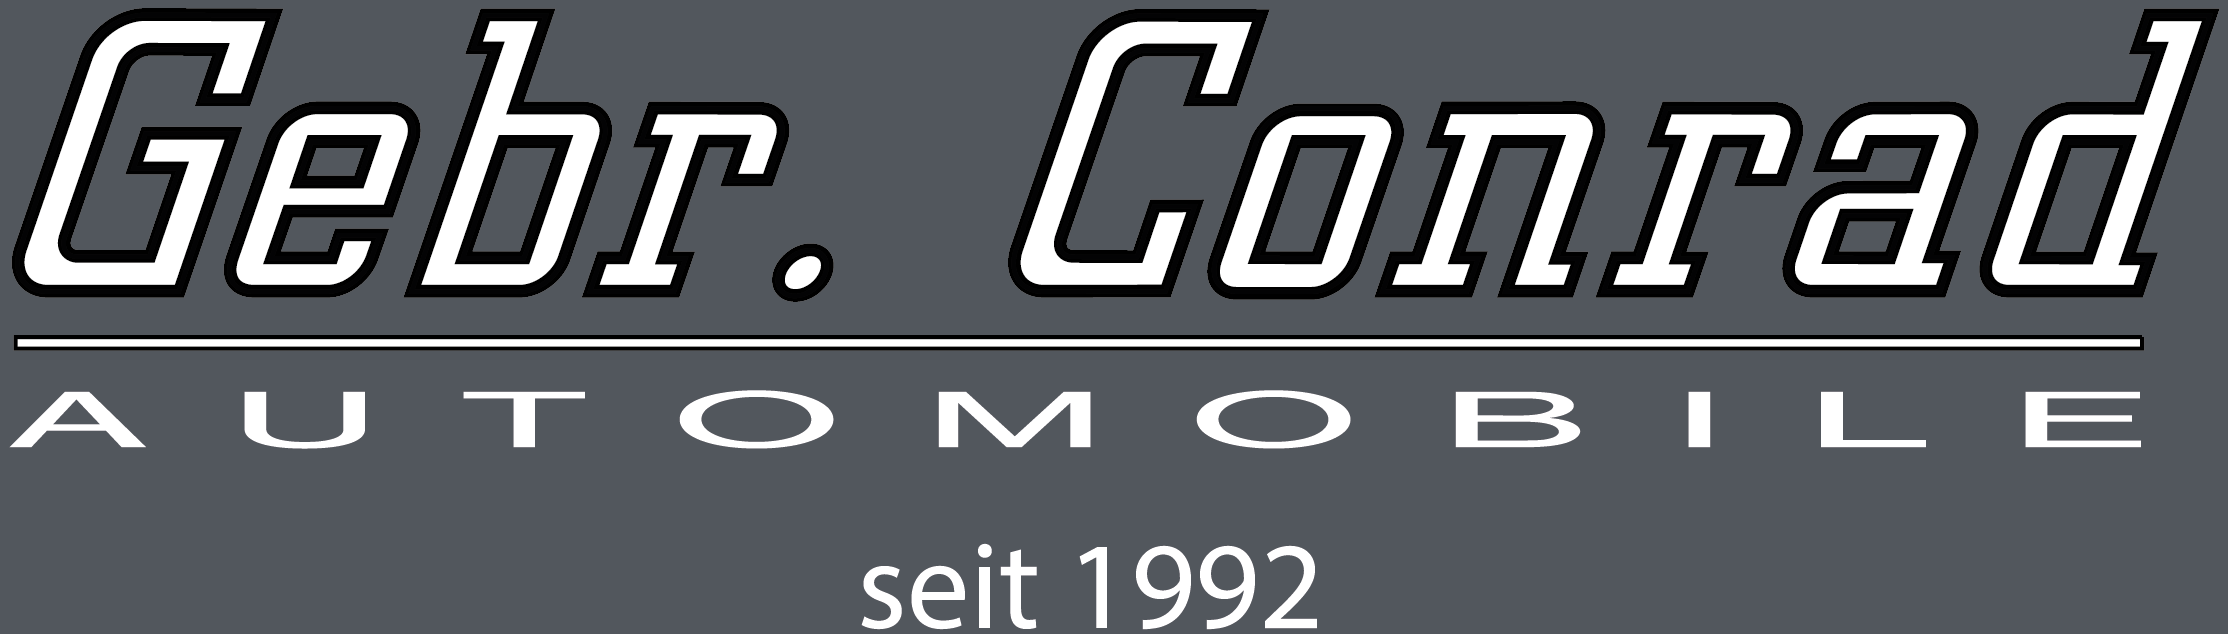 Gebr. Conrad Automobile GmbH